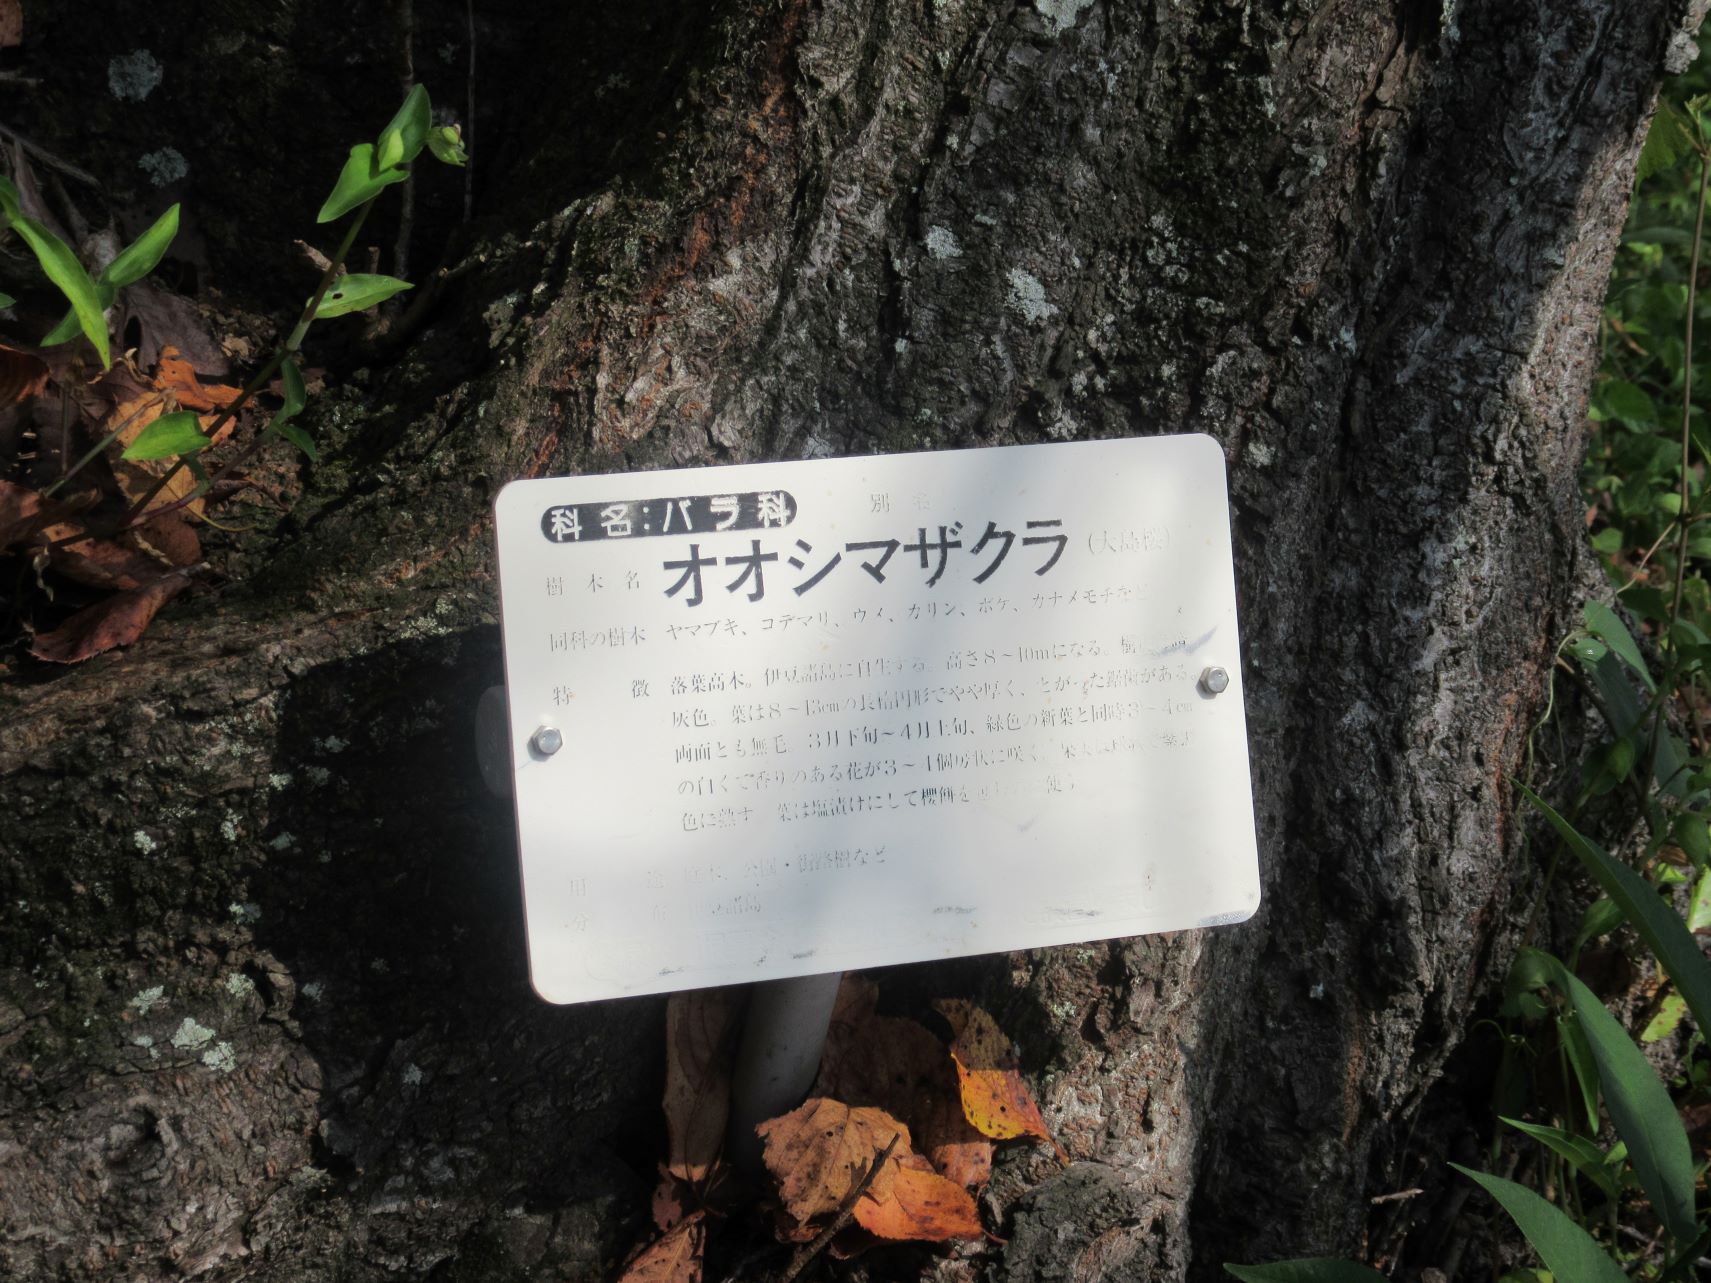 長崎県西海市四本堂公園の、オオシマザクラの看板。